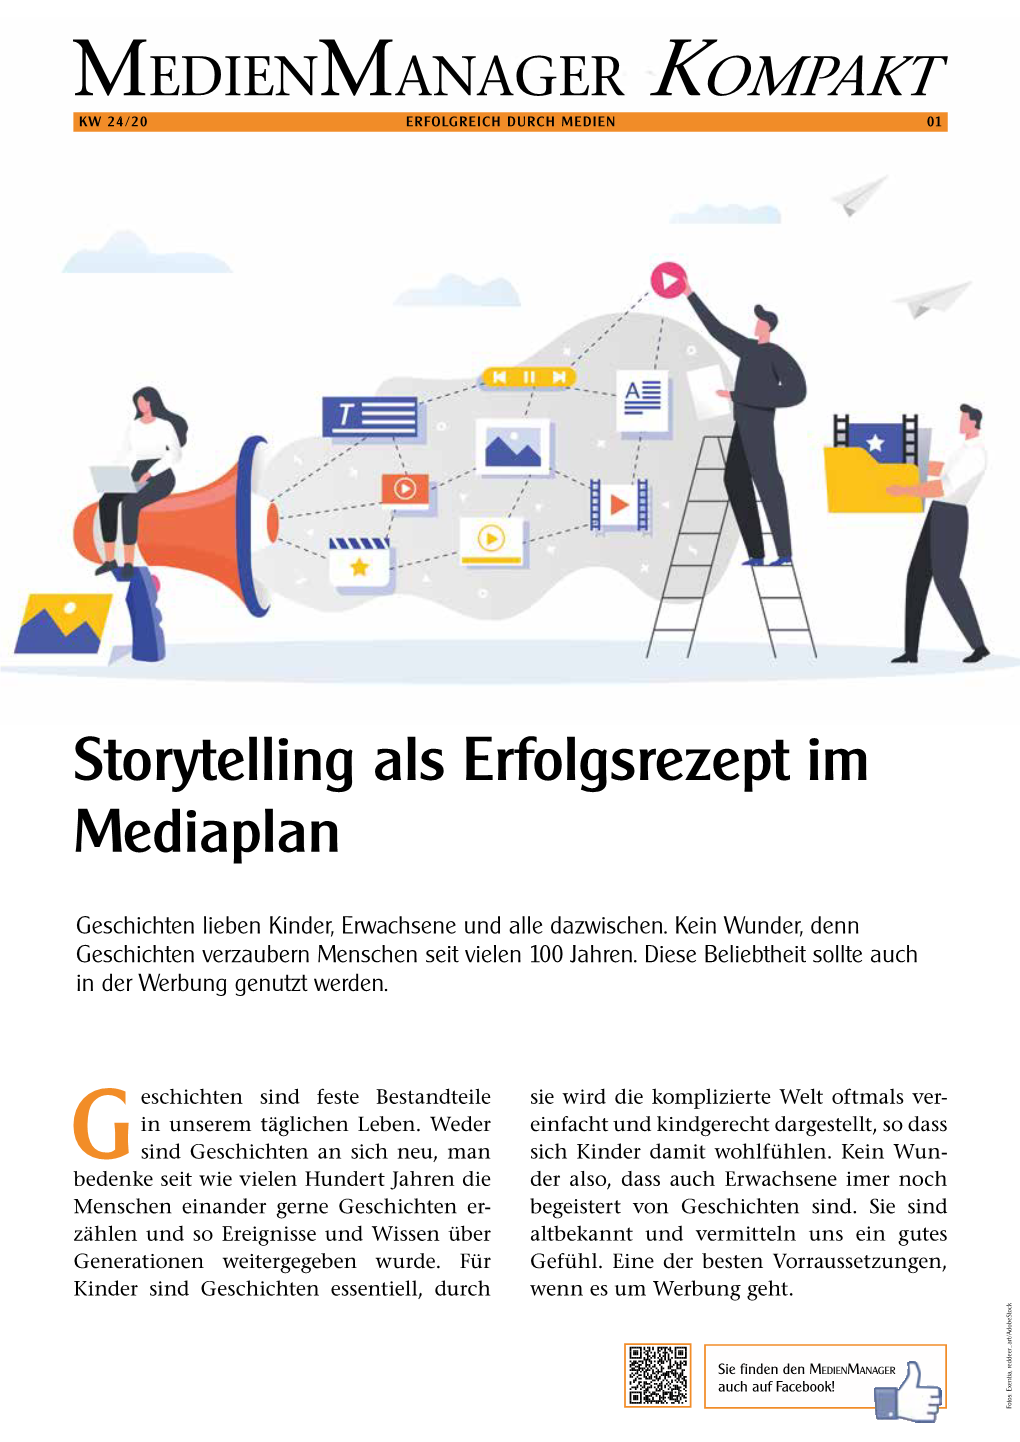 Storytelling Als Erfolgsrezept Im Mediaplan